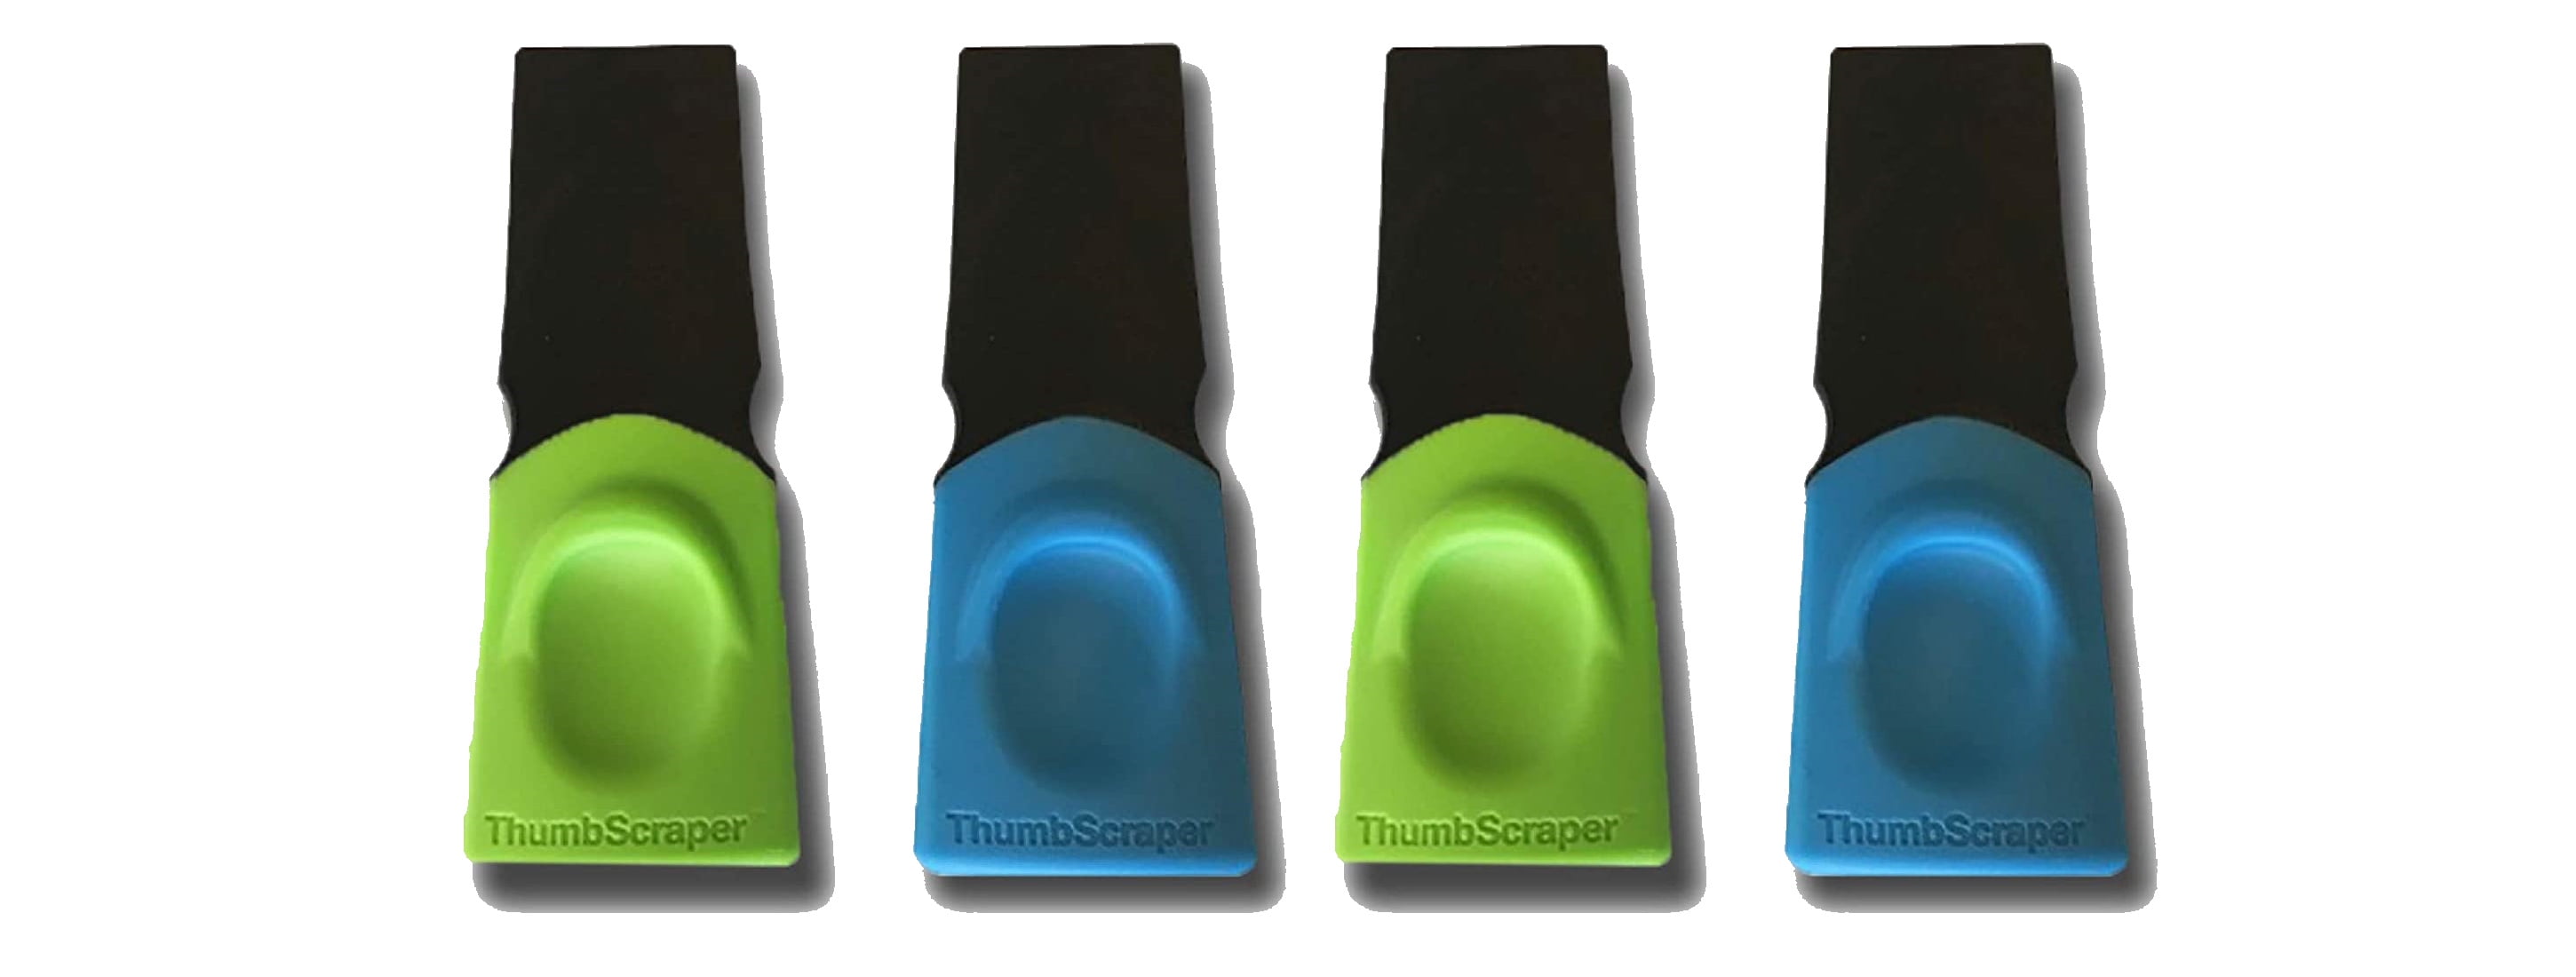 Fusionbrands 8118-SET2 Thumb Small Task Scraper Tool Blue & Green 